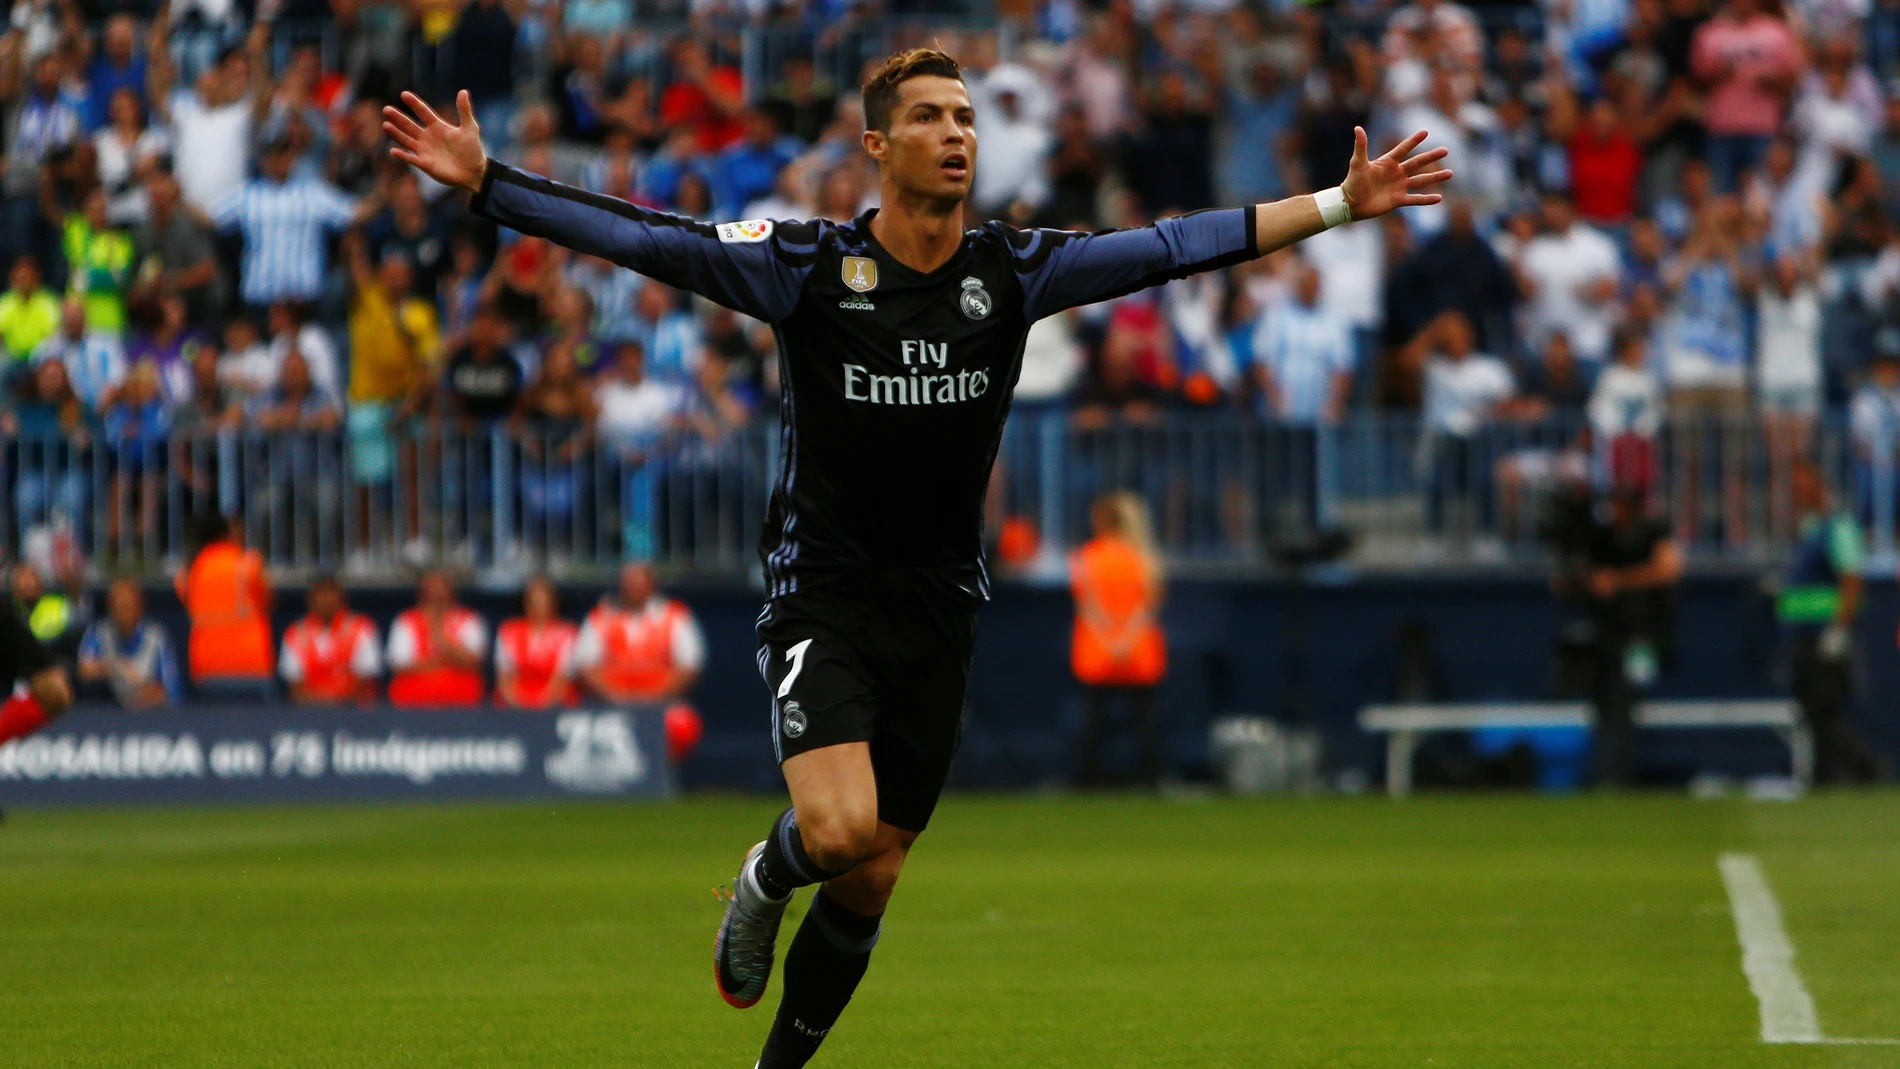 El Real Madrid marca en todos los partidos de Liga primera vez en su historia